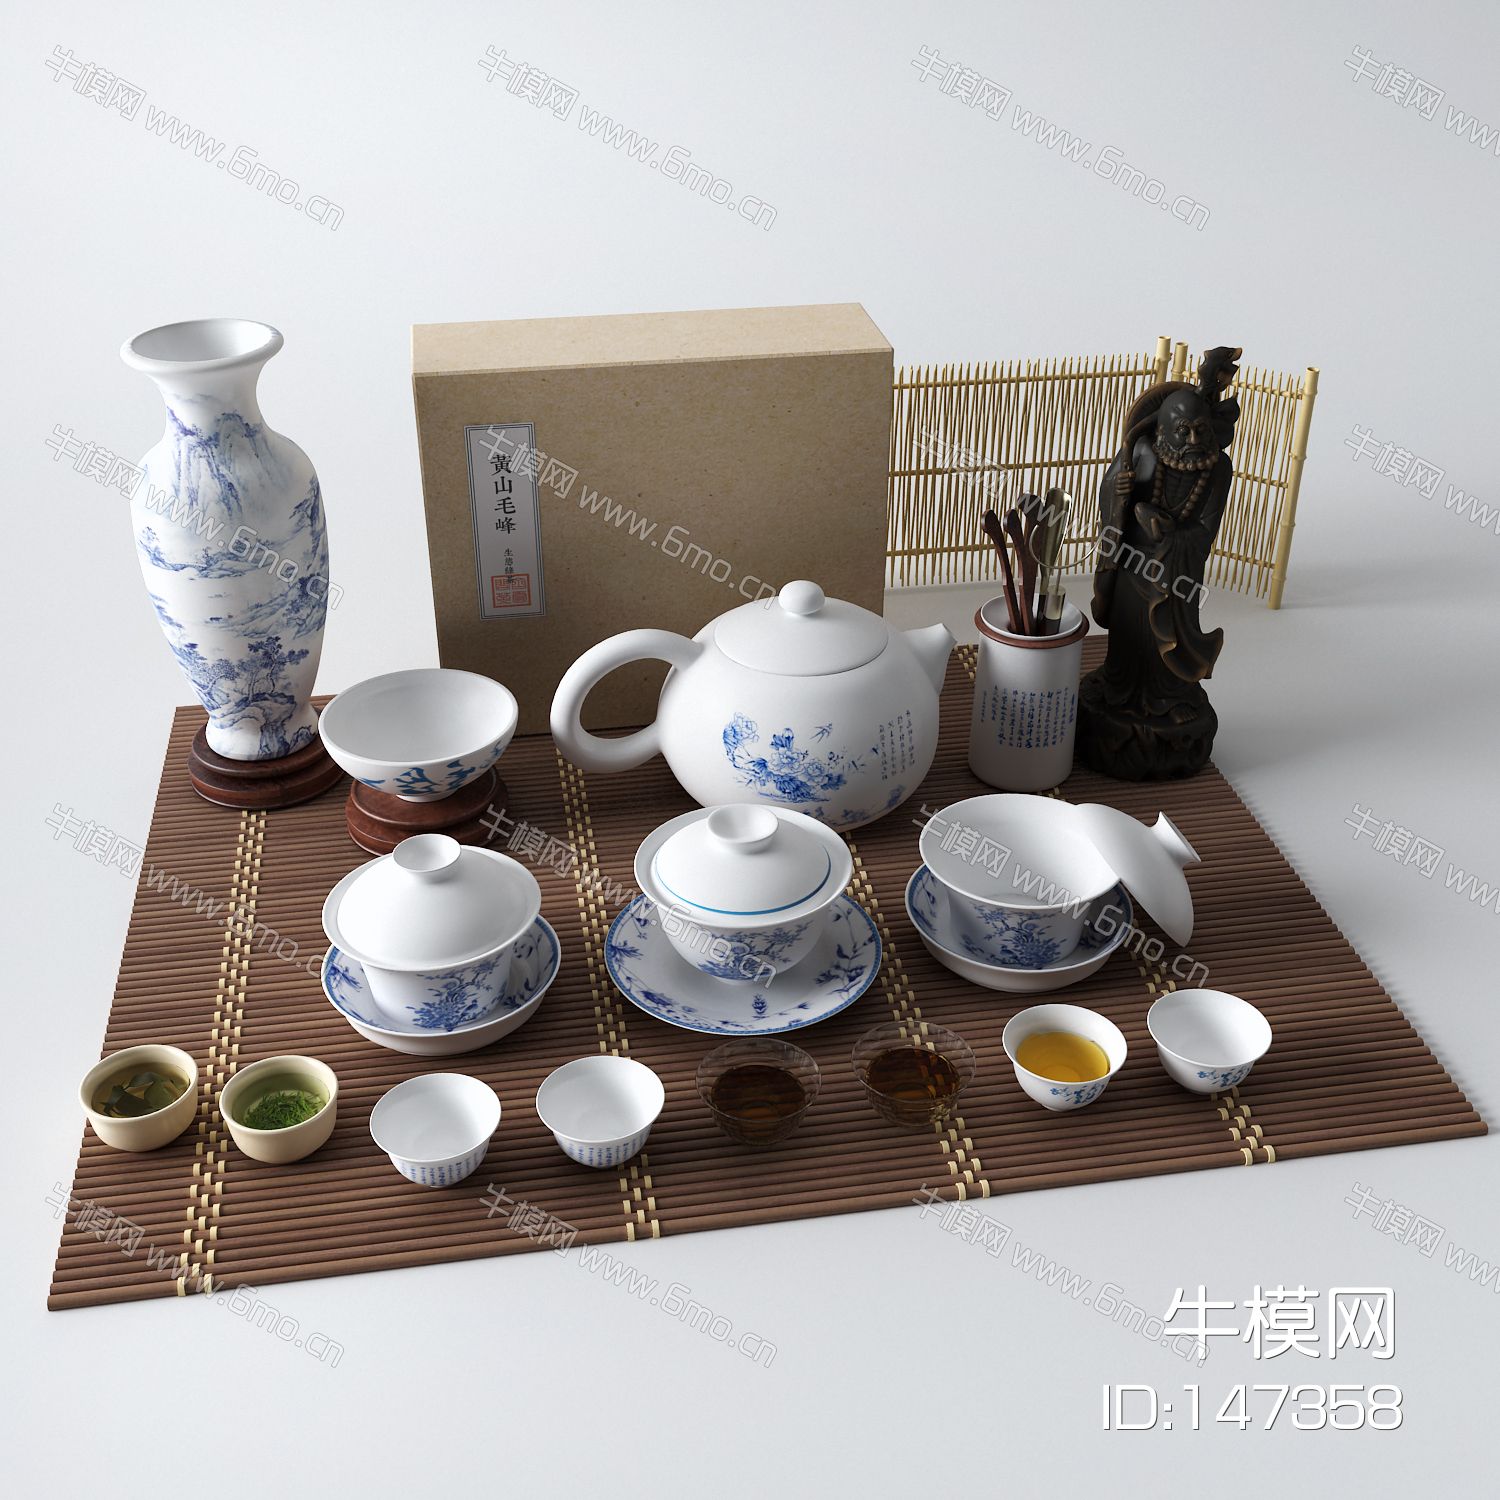 新中式茶具 茶叶盒 茶杯